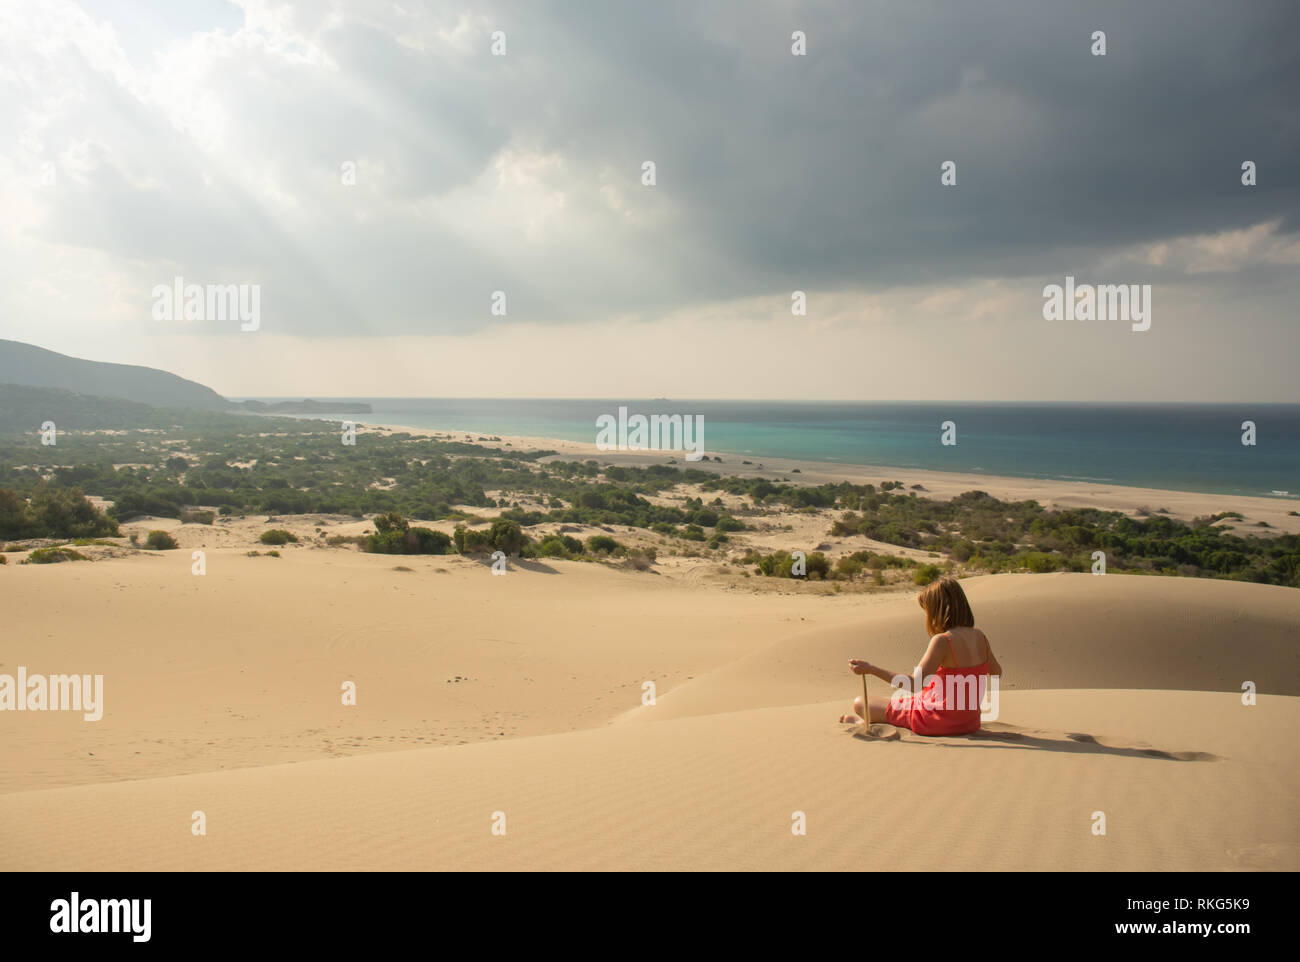 Girl in red détente dans désert de sable Banque D'Images